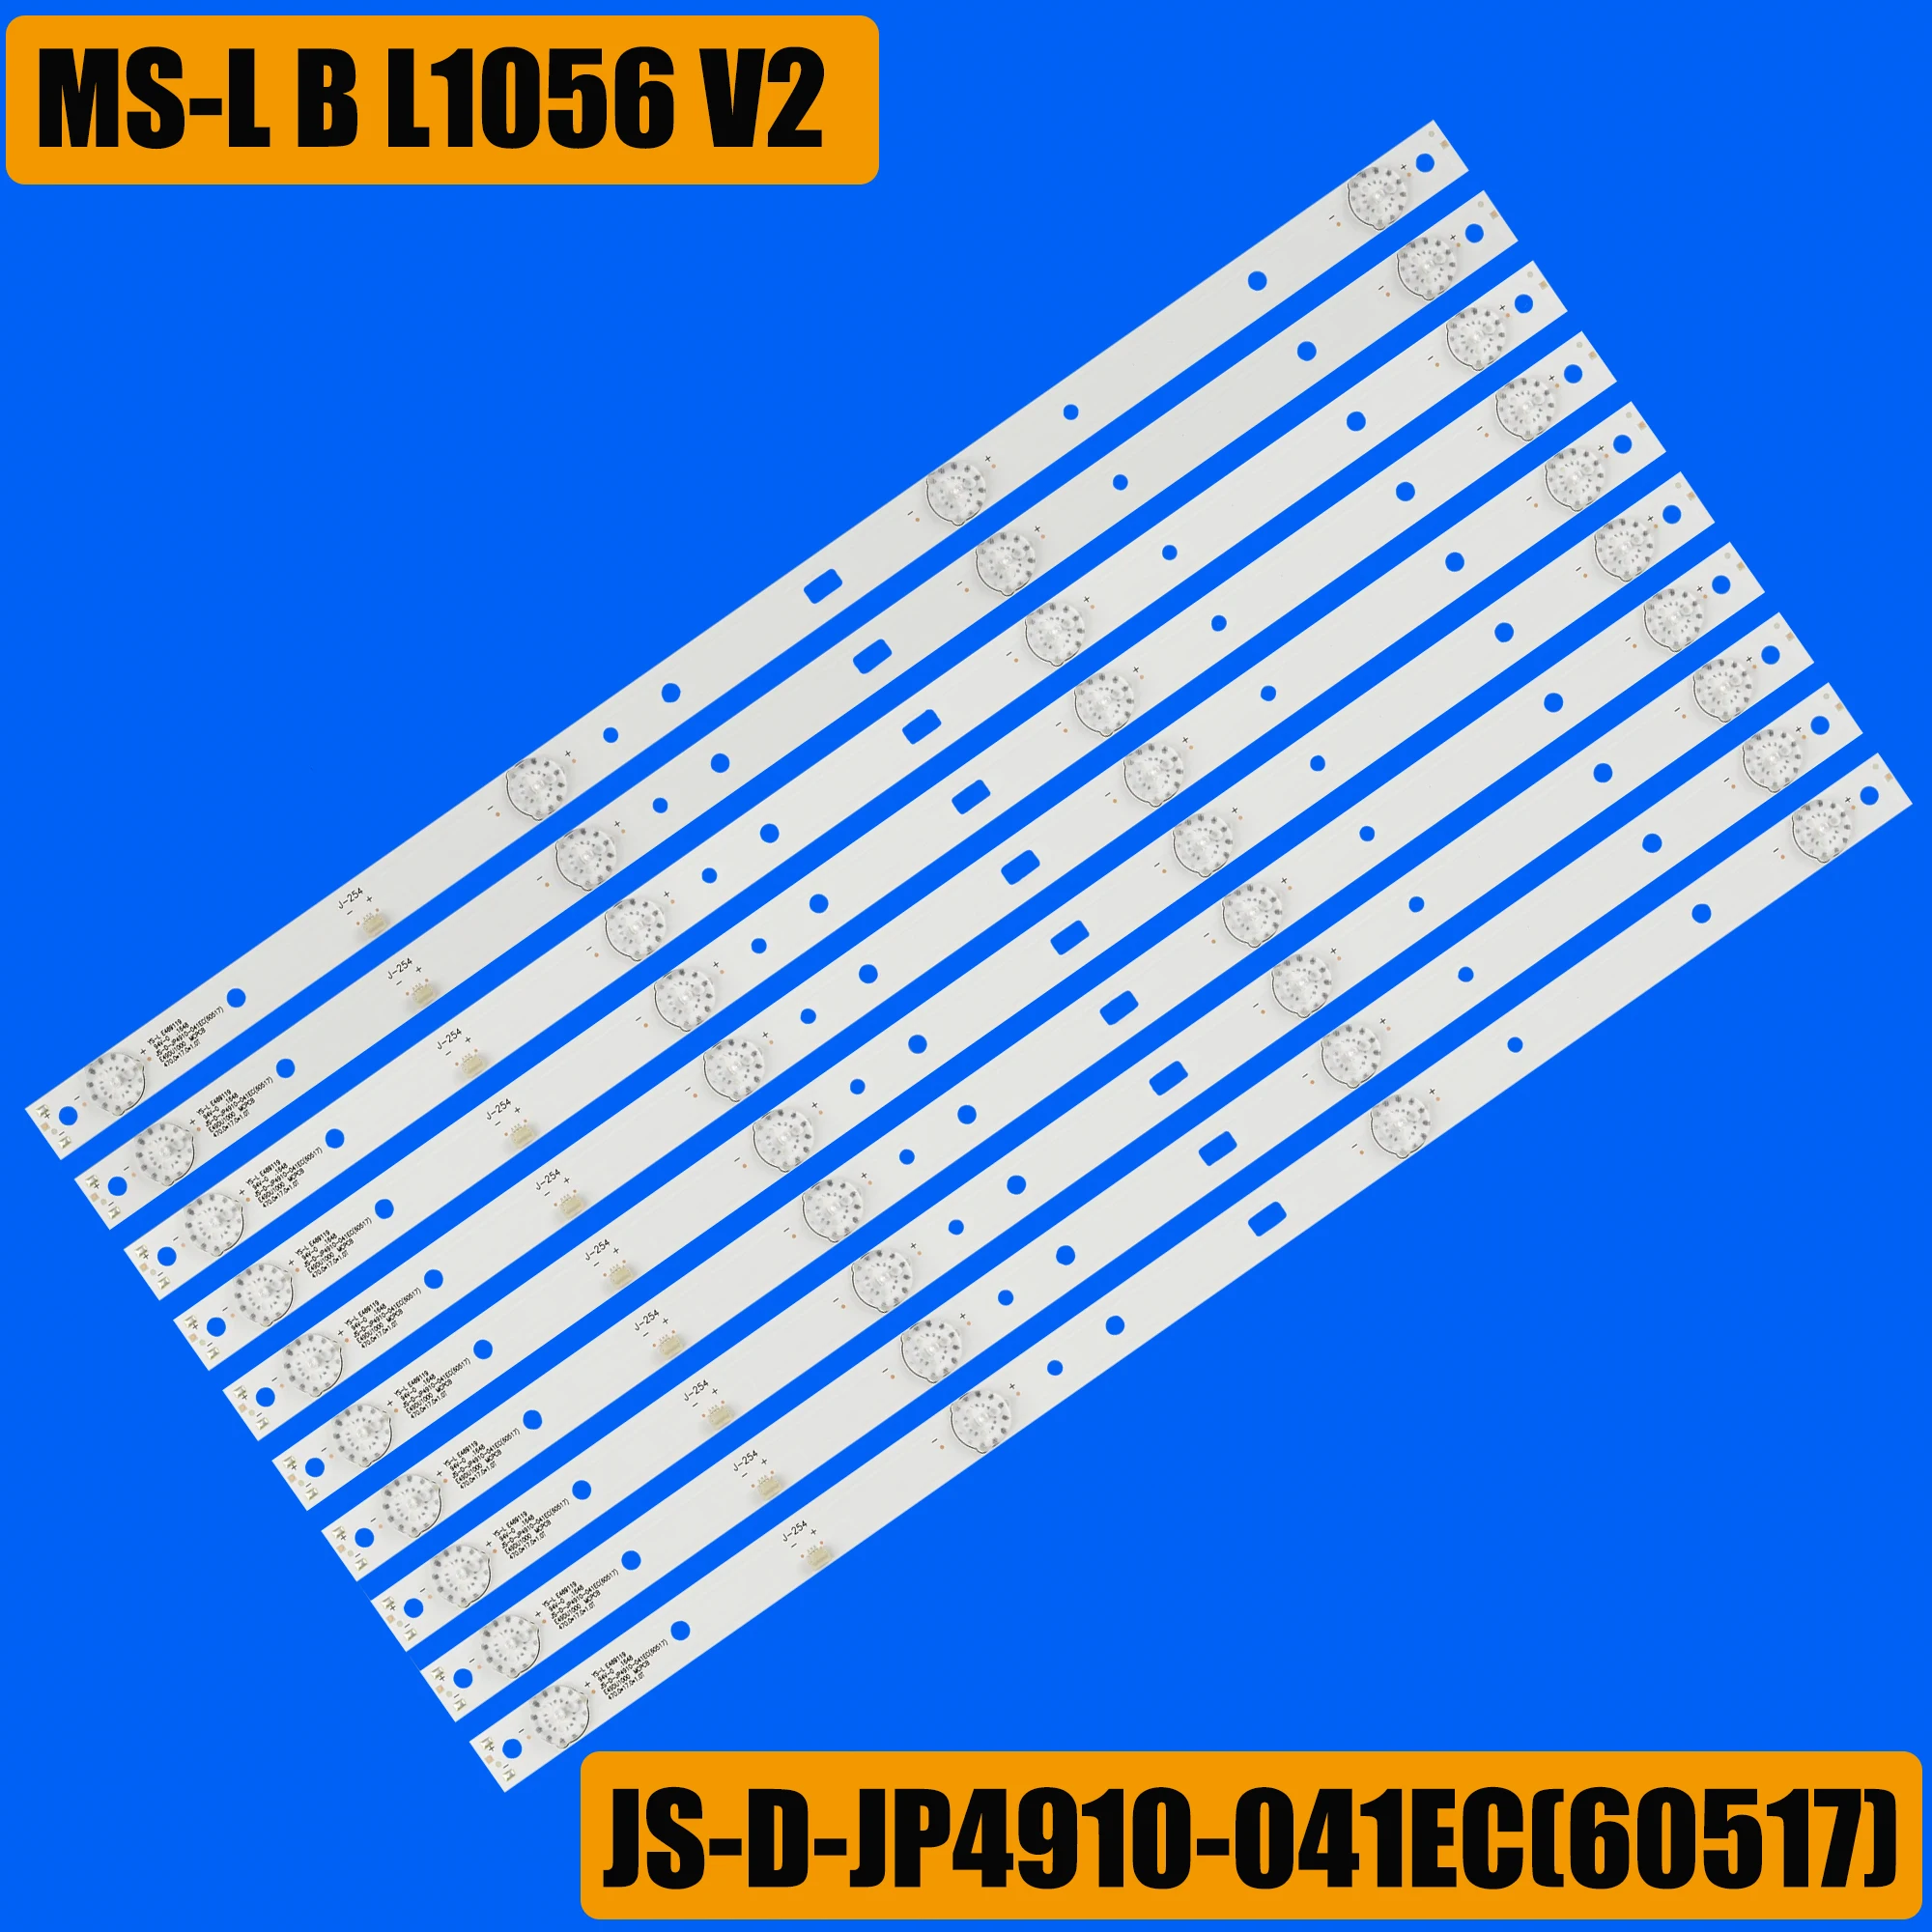 Светодиодная лента подсветки для AKAI MS-L B L1056 V2 R72-49D04-001 AKAI CTV5035 49AX3000 JS-D-JP4910-041EC (60517) E49DU1000 DU49-1000